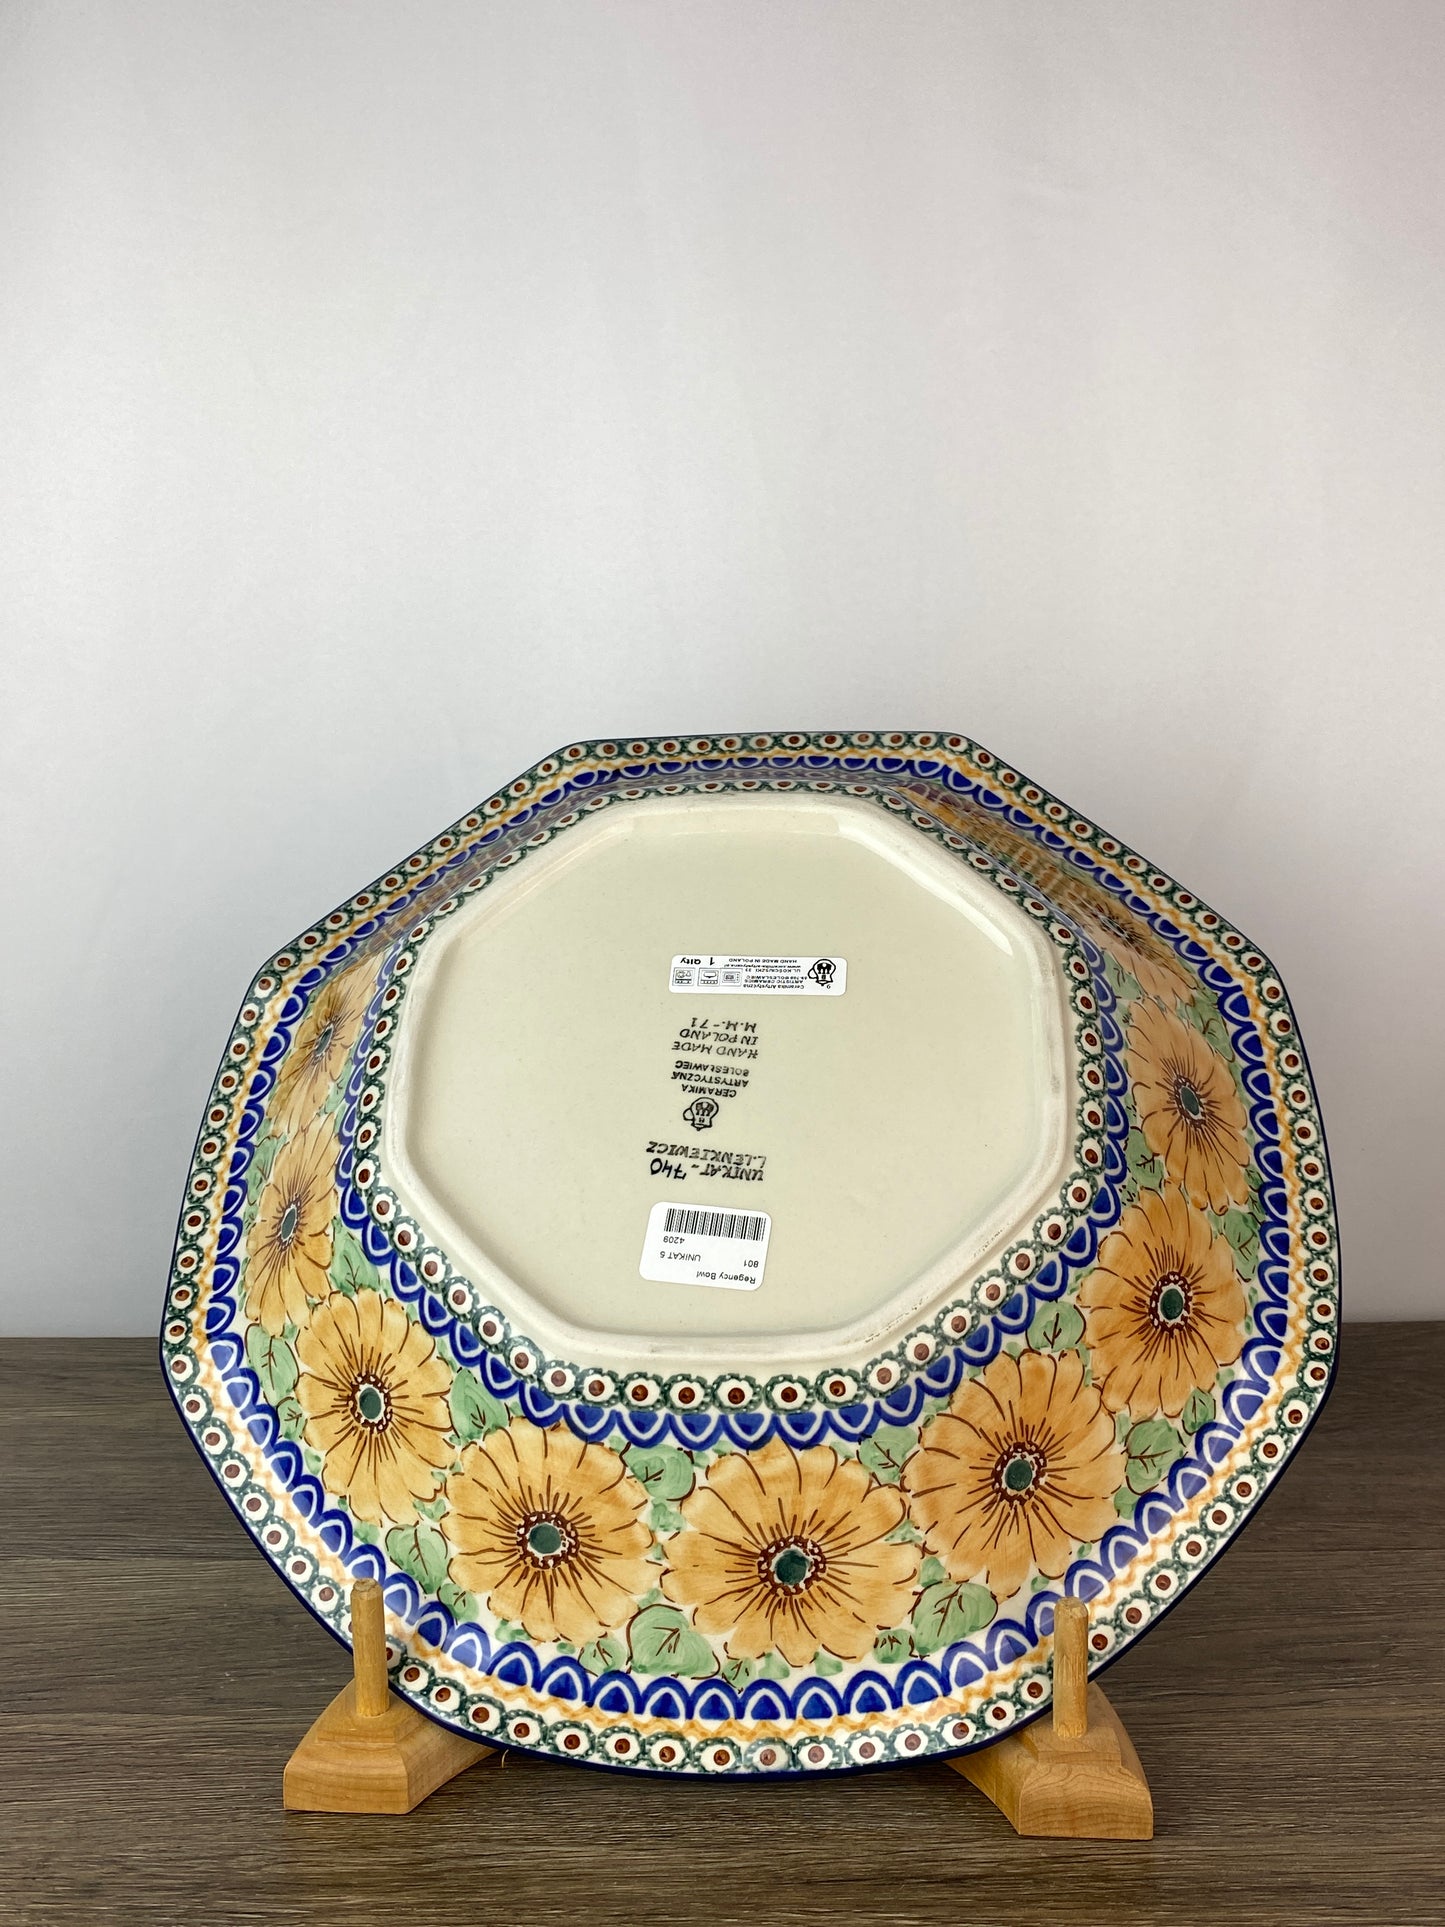 SALE Extra Large Flared Unikat Bowl - Shape 801 - Pattern U740